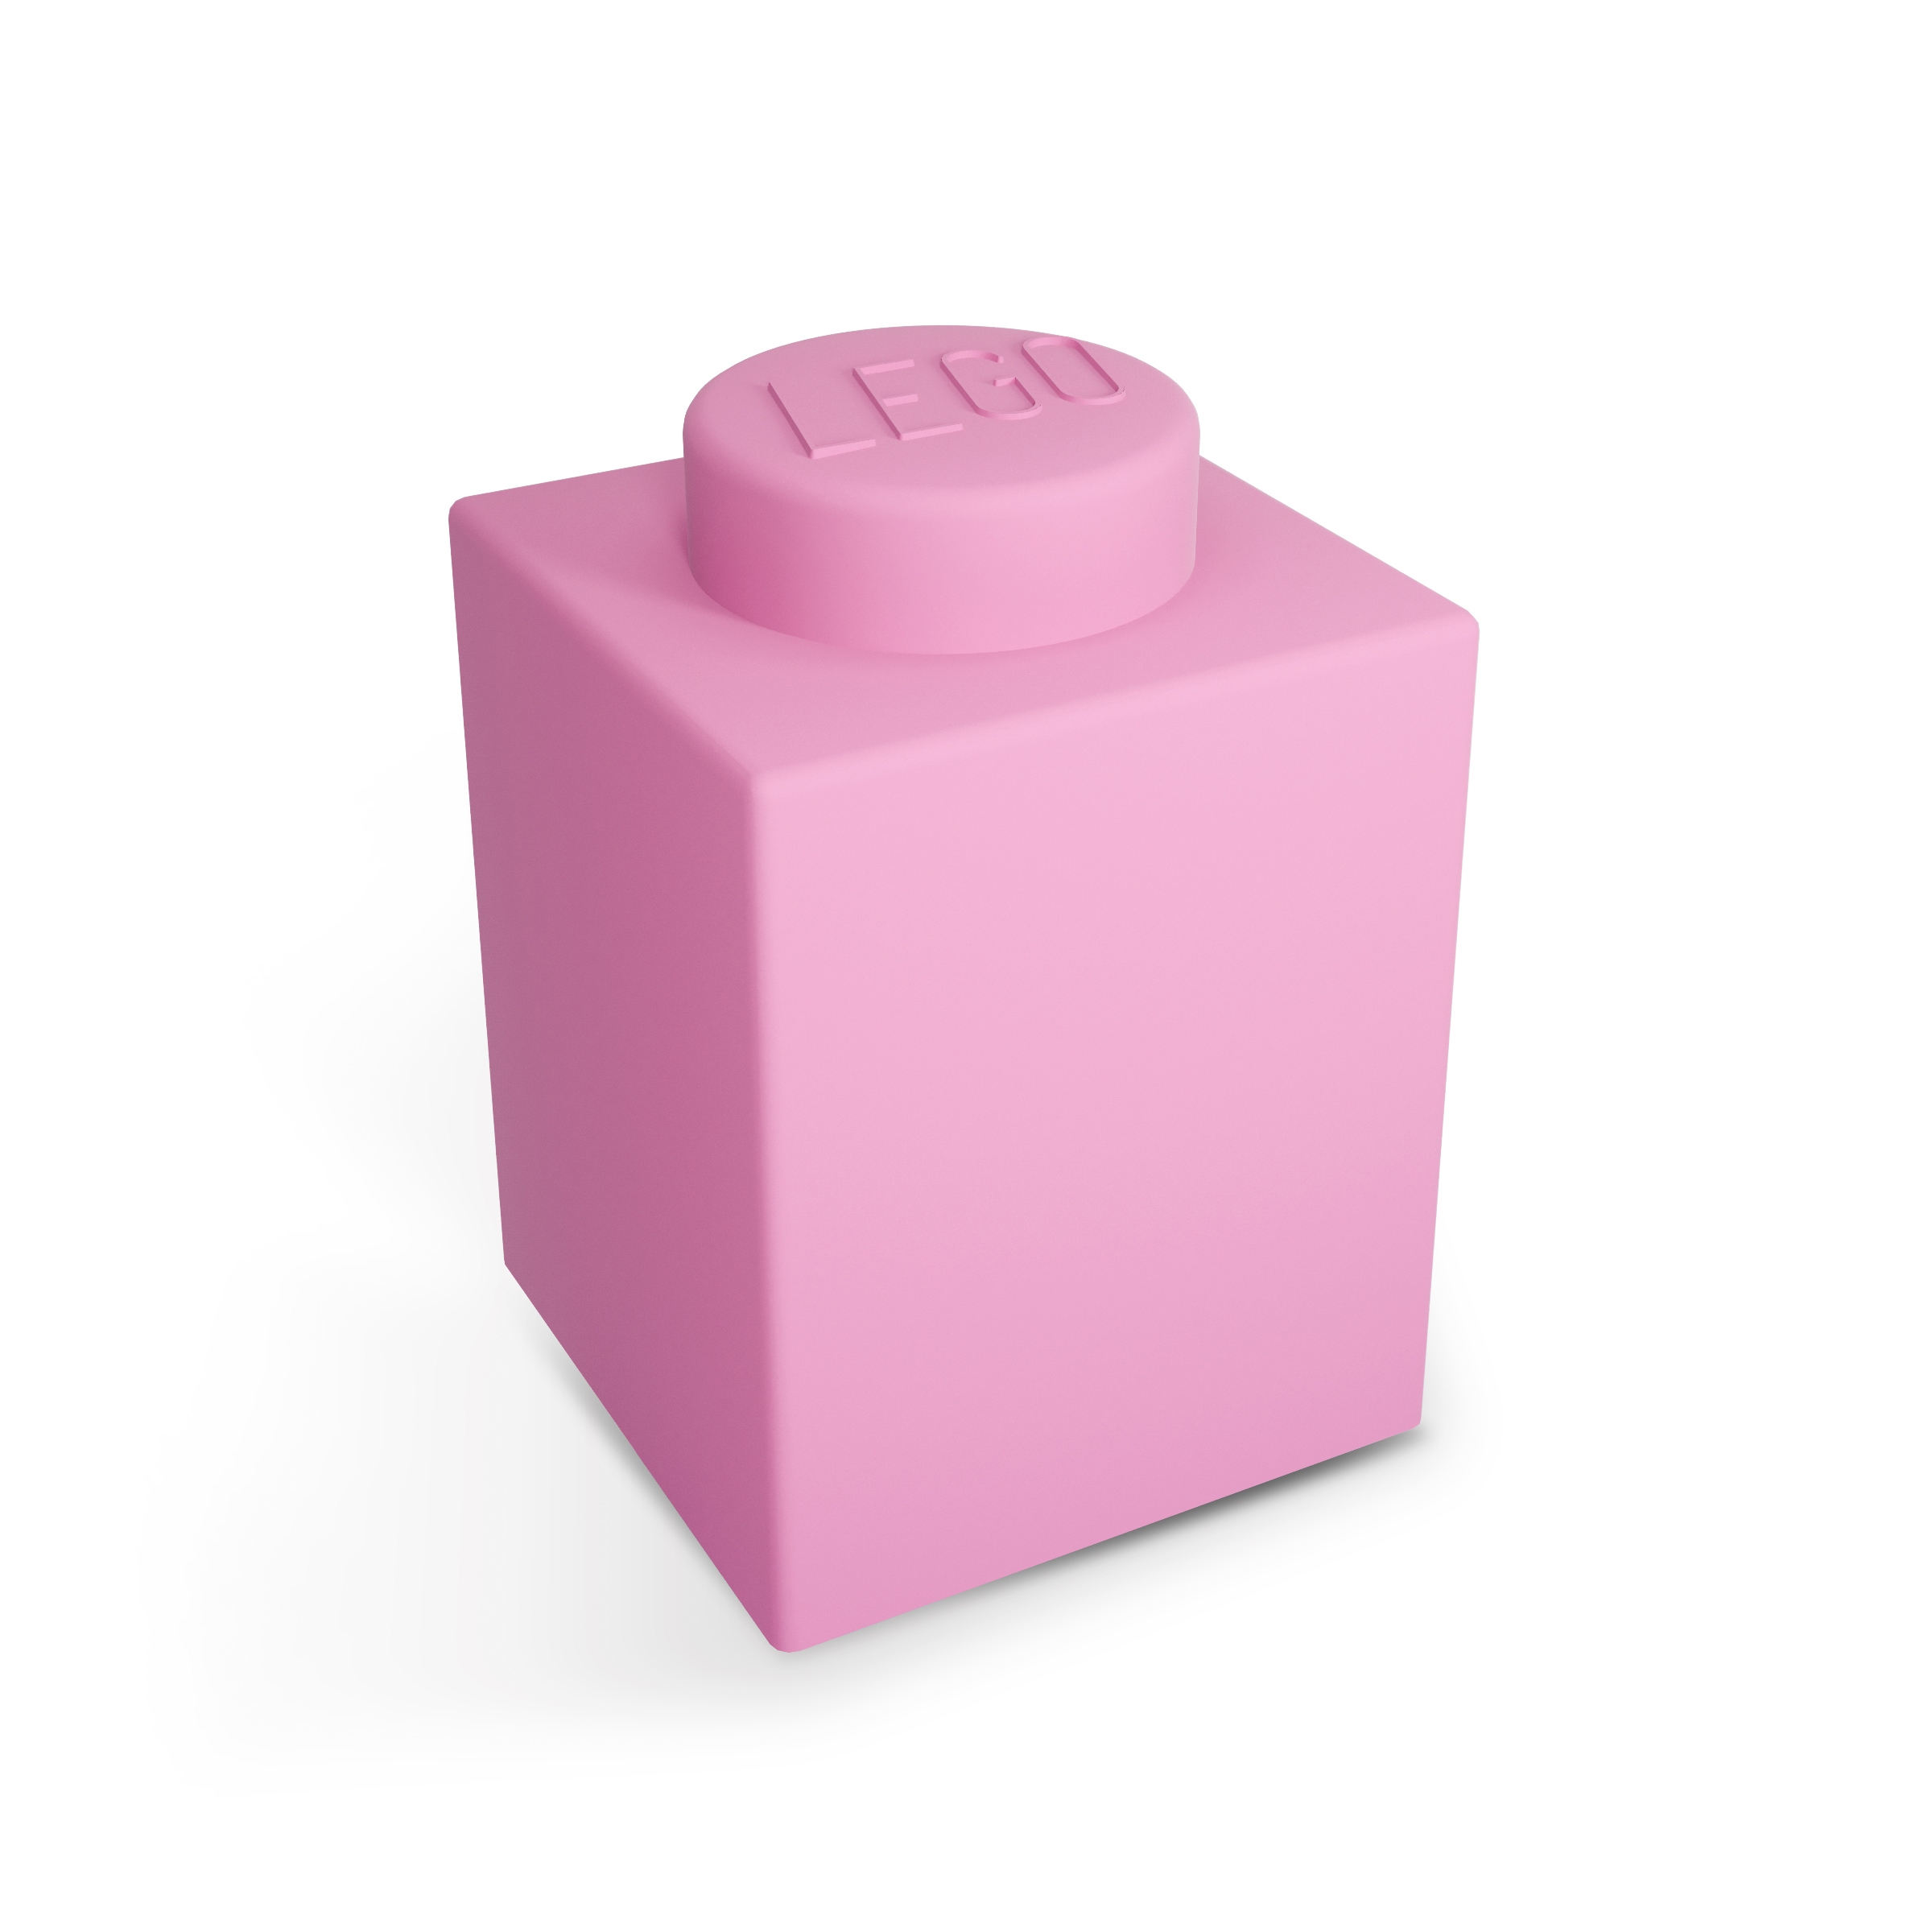 Ladrillo-estante rosa 5006616 | Otros | Oficial LEGO® Shop US